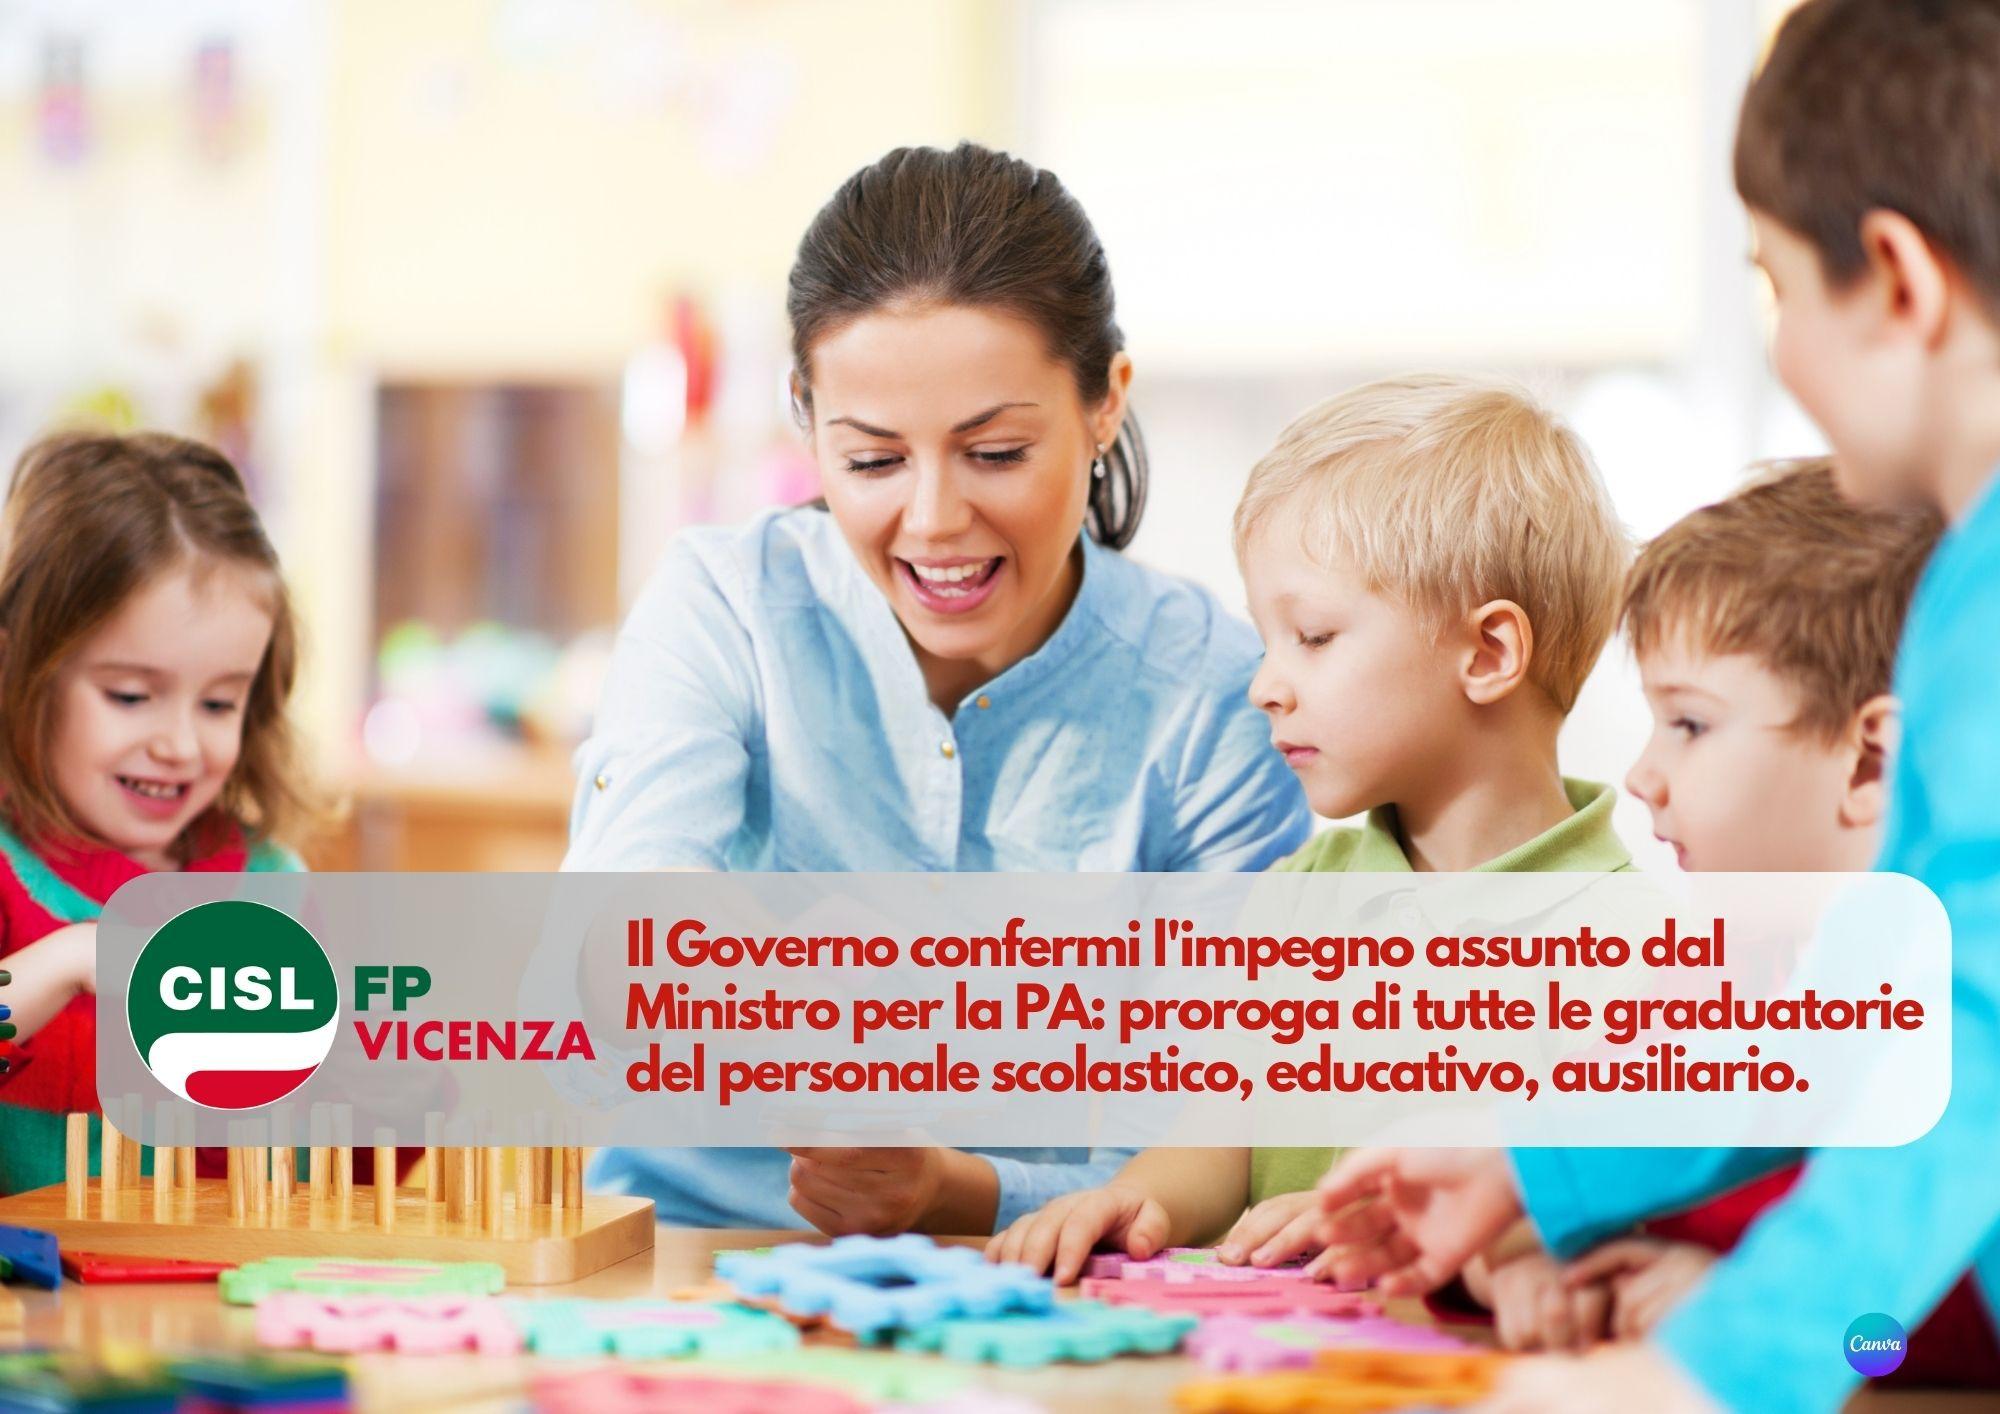 CISL FP Vicenza. Il Governo confermi proroga graduatorie personale scolastico, educativo, ausiliario